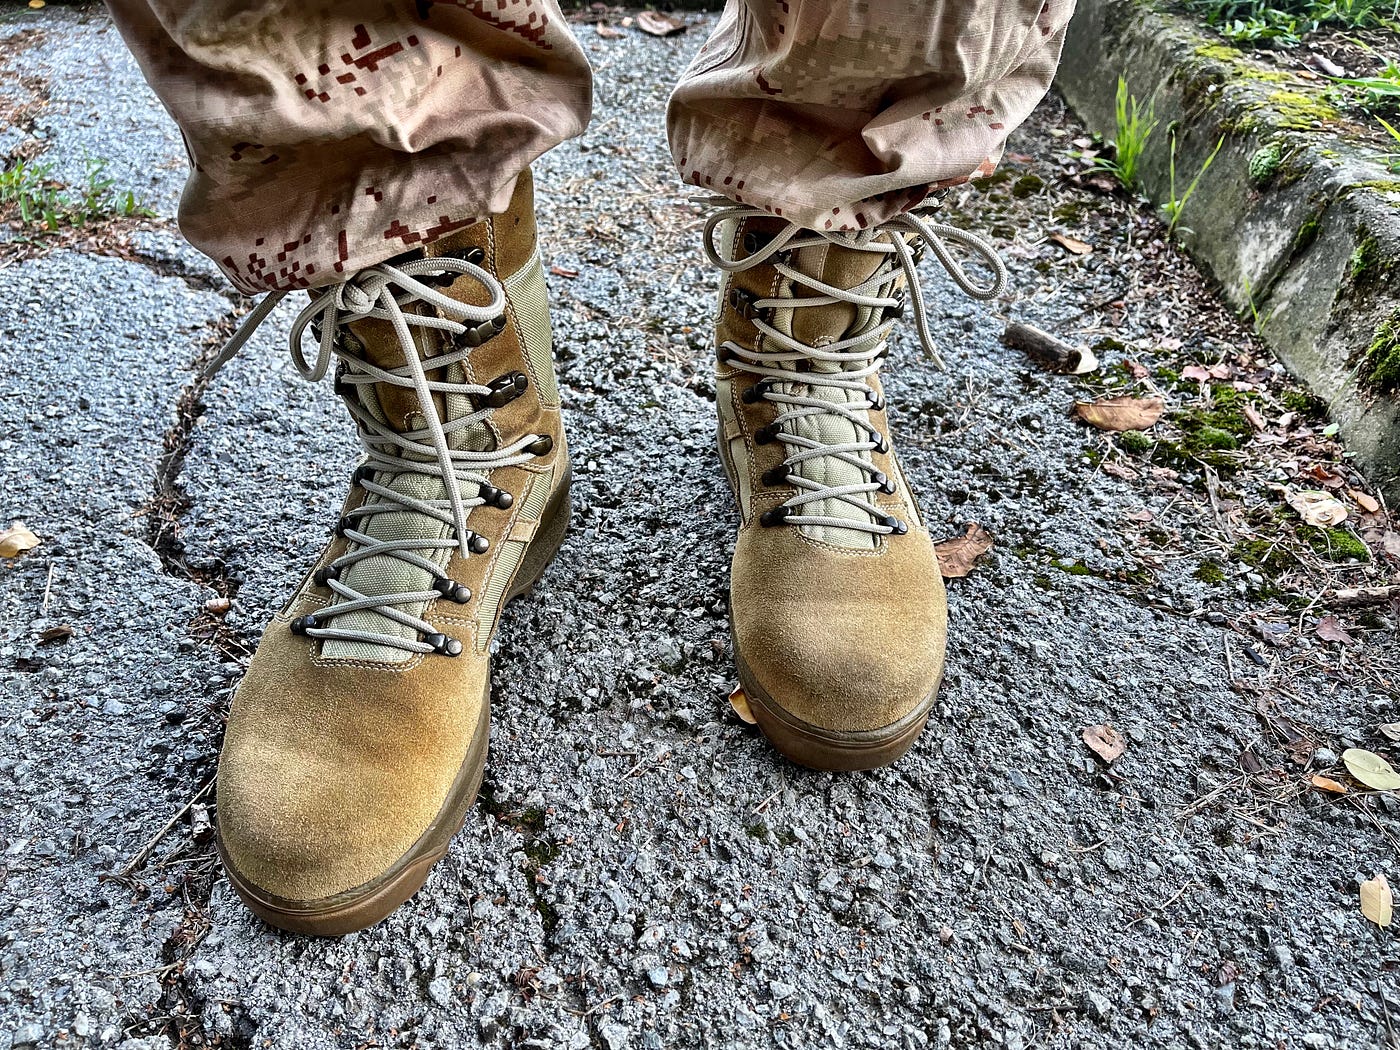 INKOP Ares pustinjske čizme. Vojne čizme za misije u pustinjskom… | by Matt  Marenic | Blog: mattmarenic.com